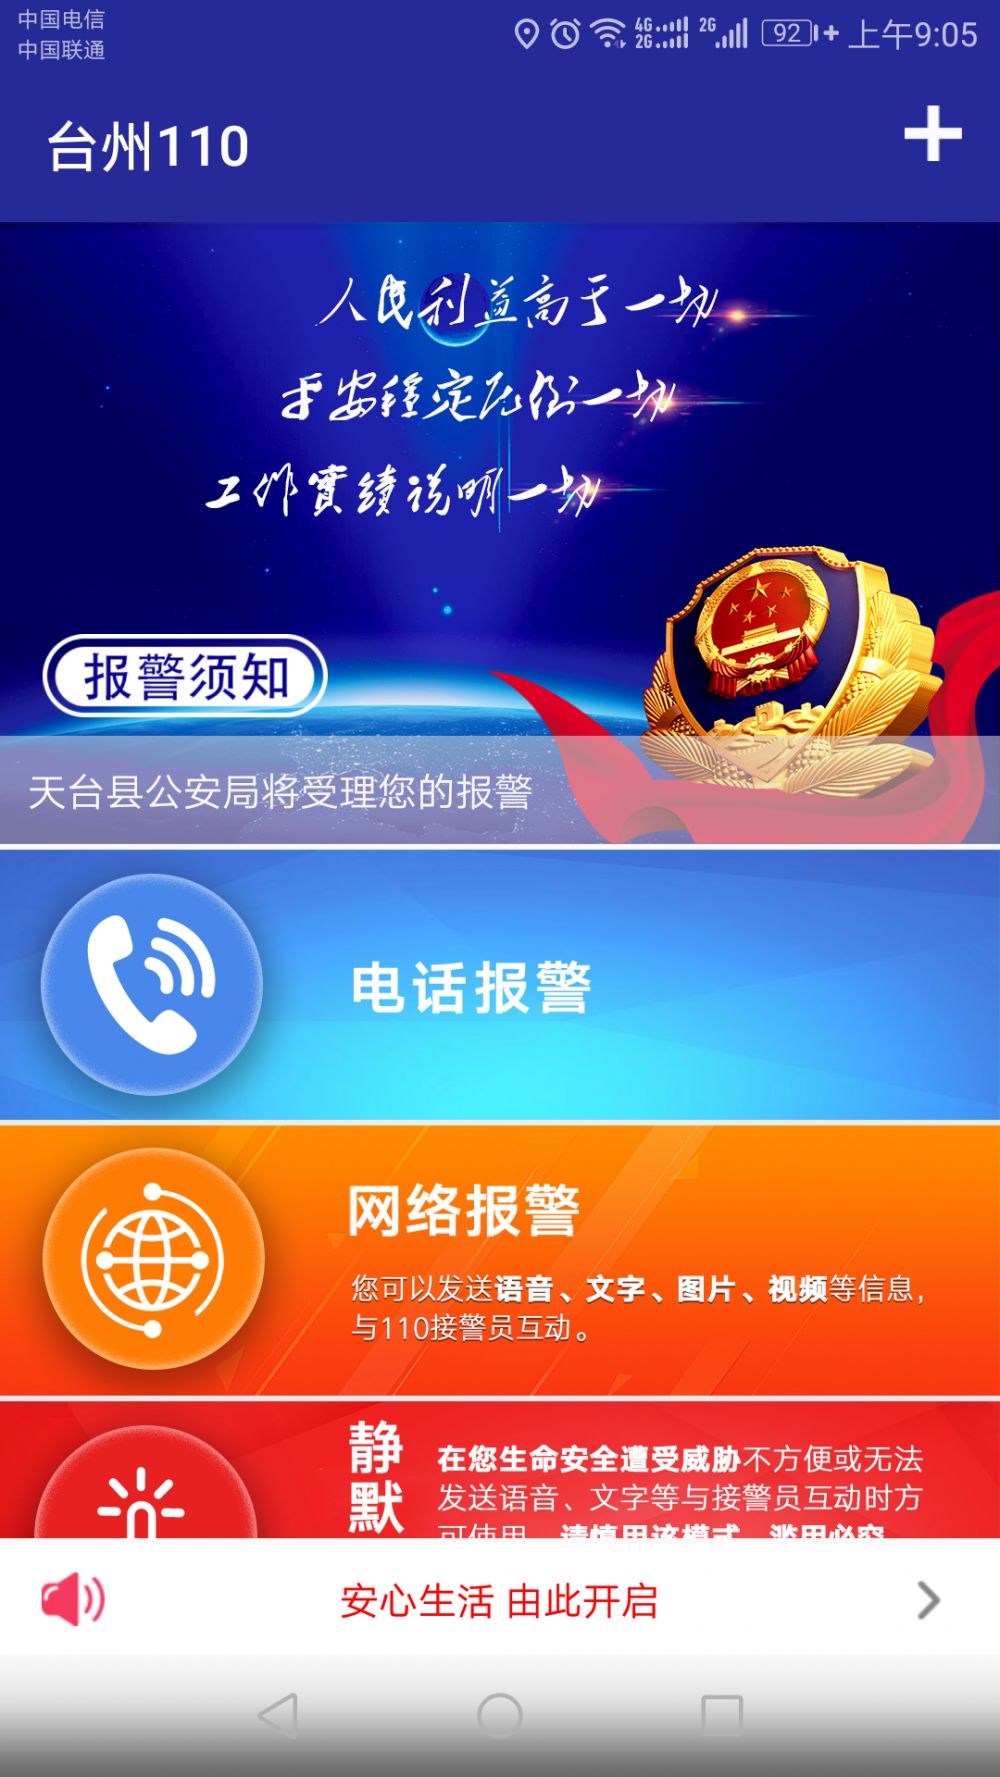 暗中保护你浙大台州研究院孵化企业研发的台州公安110报警app正式上线